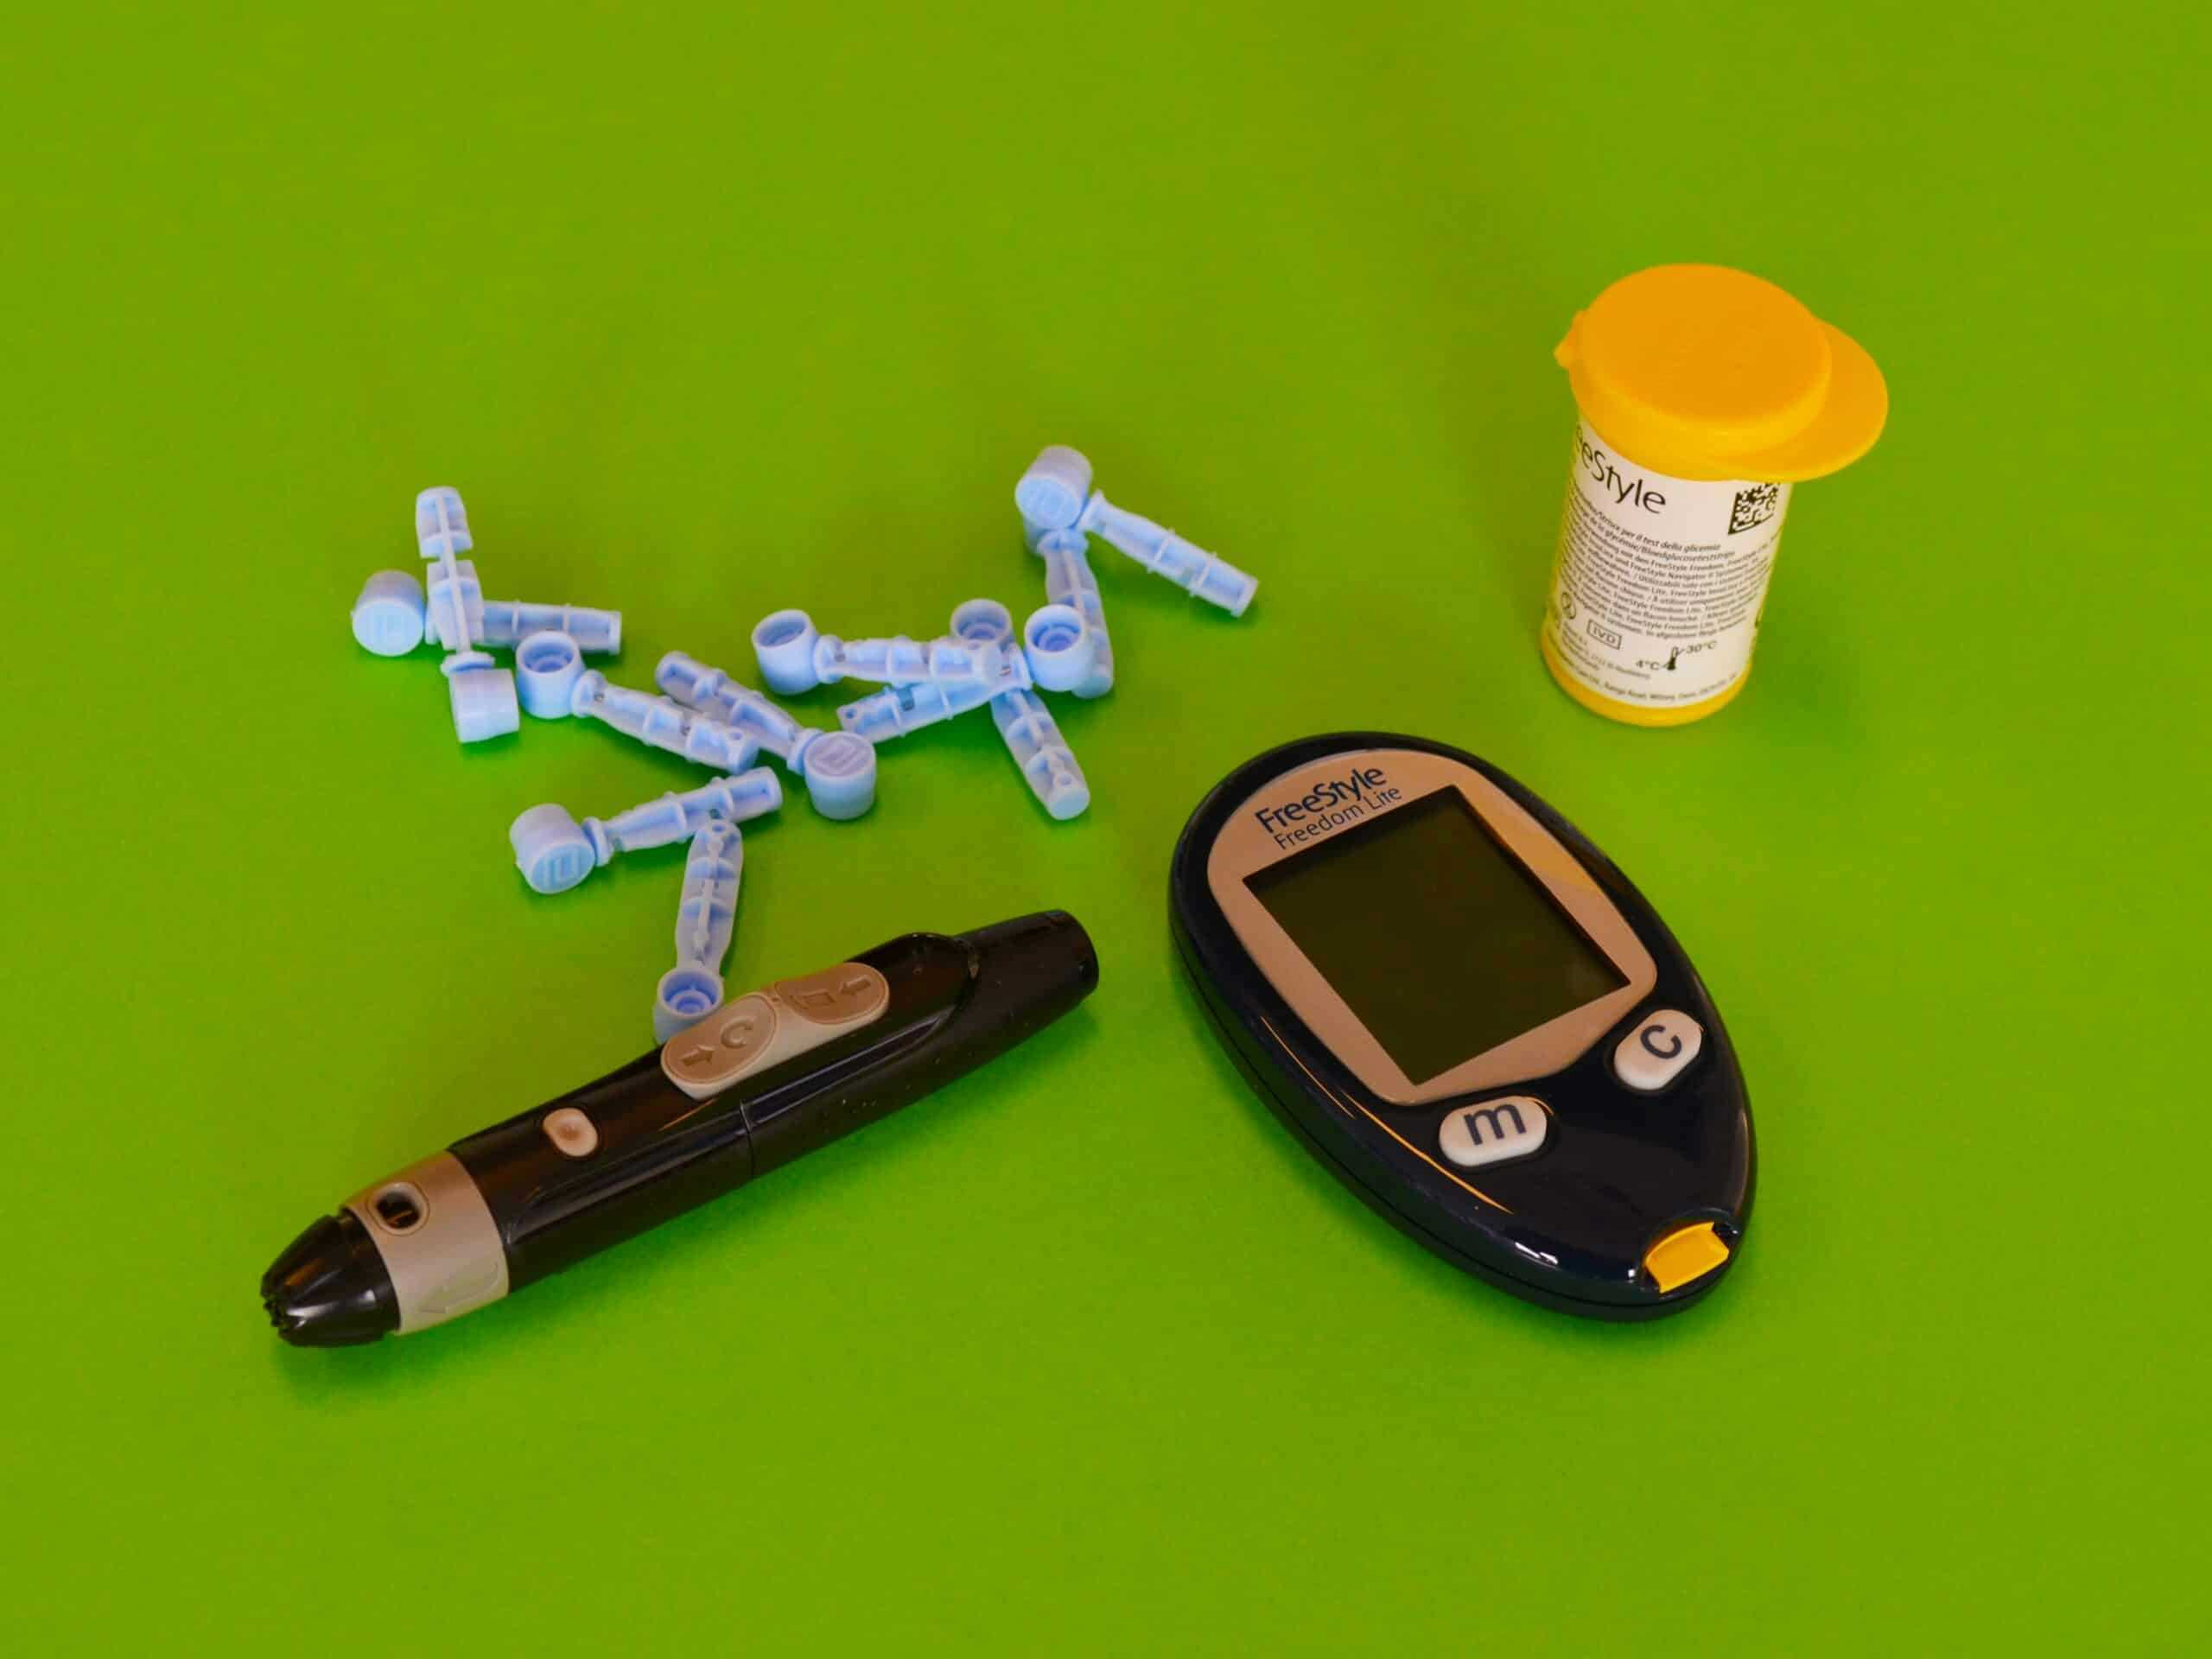 Cane diabetico. Come misurare la glicemia?